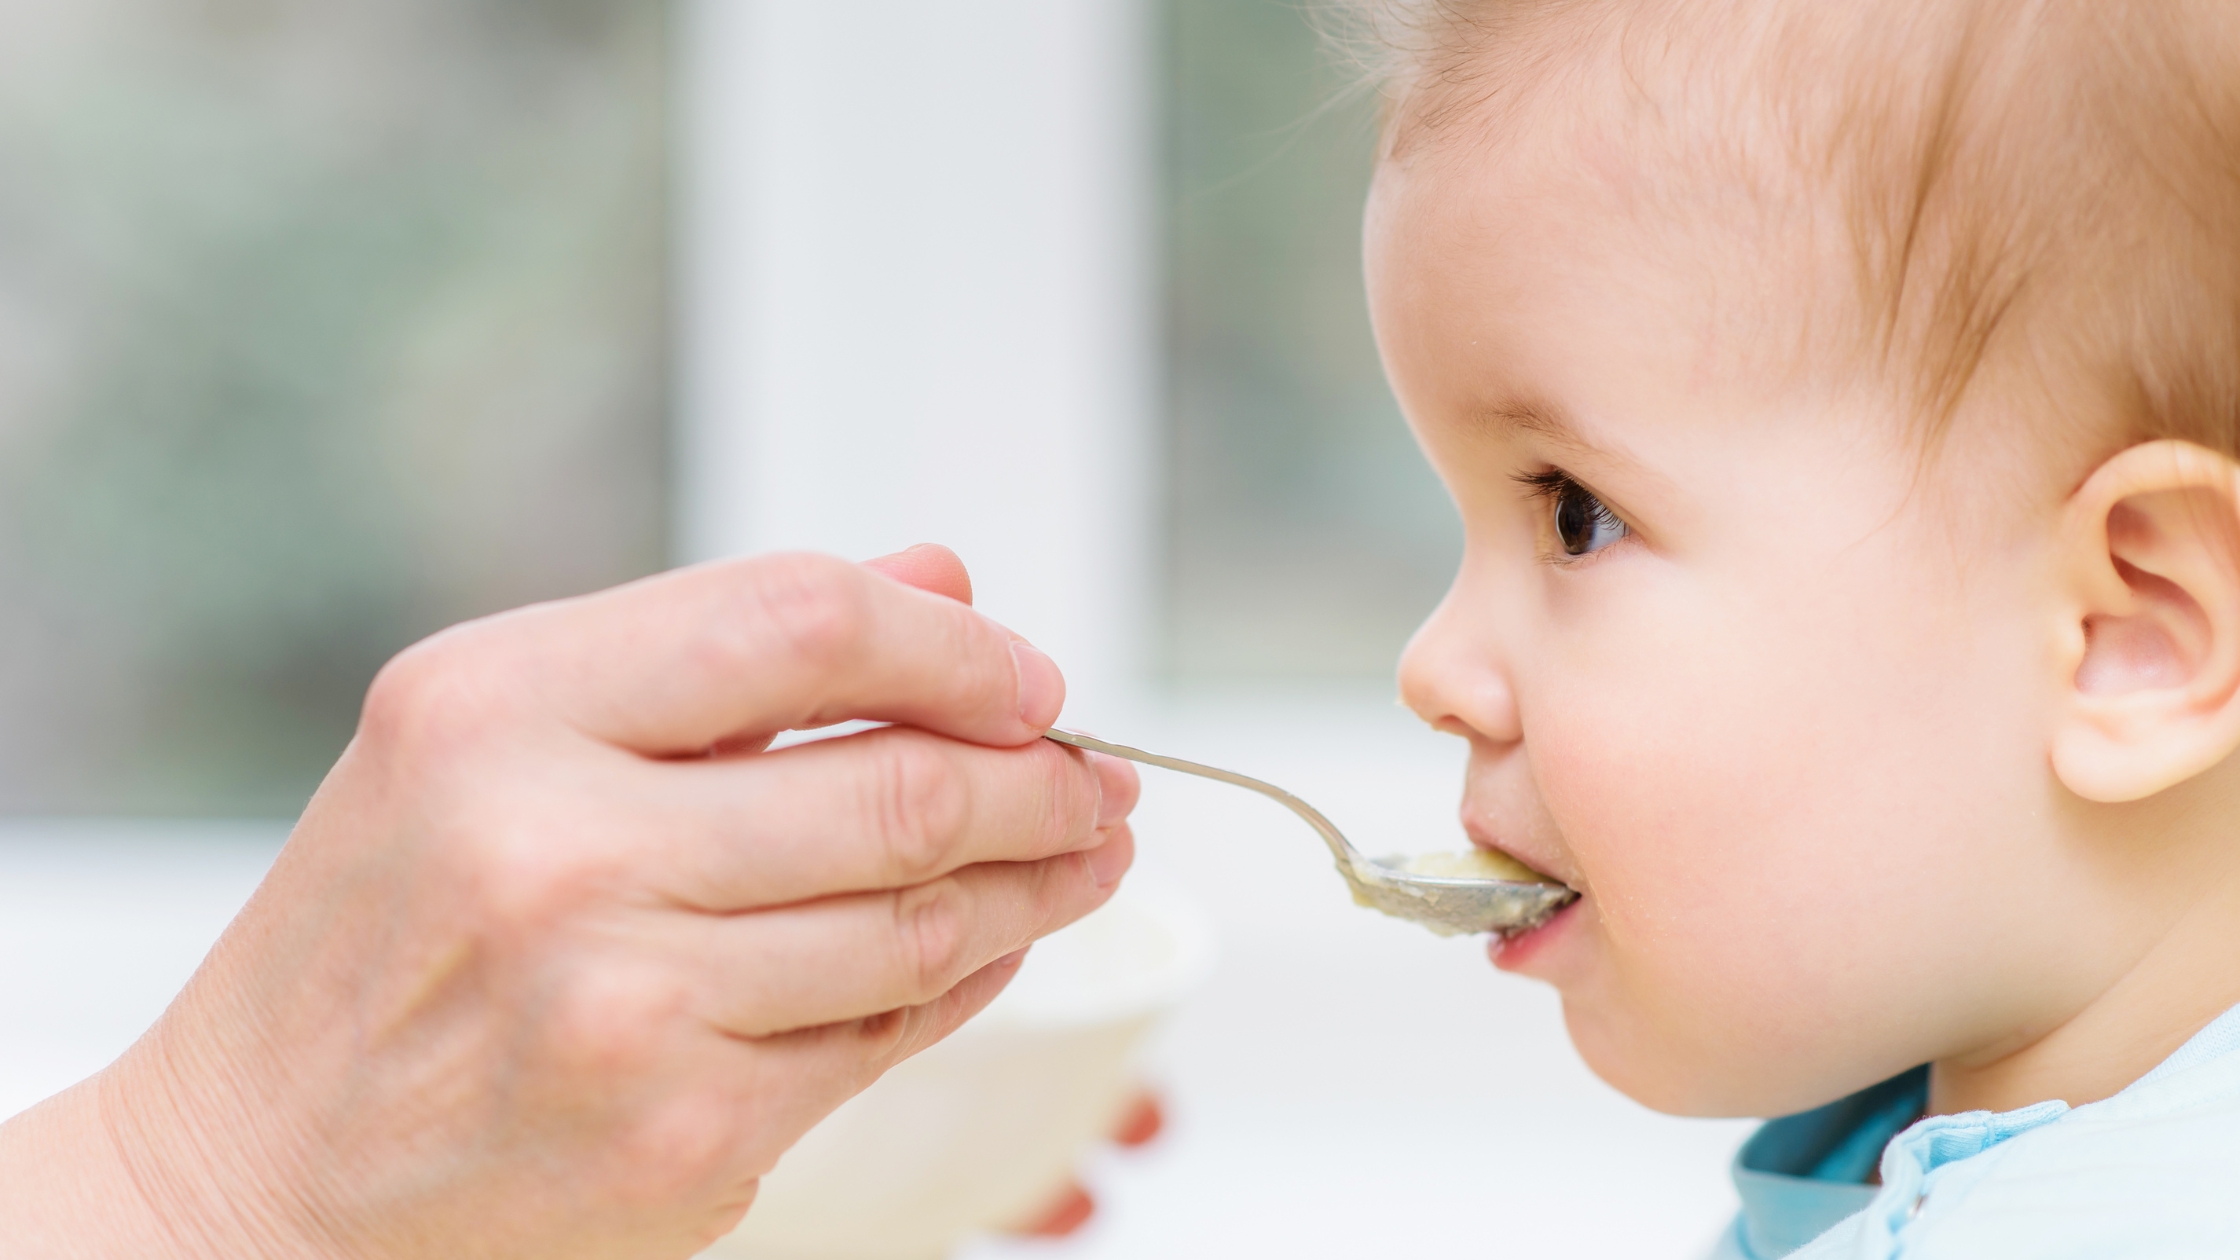 Rubrika - kojení a dětská výživa